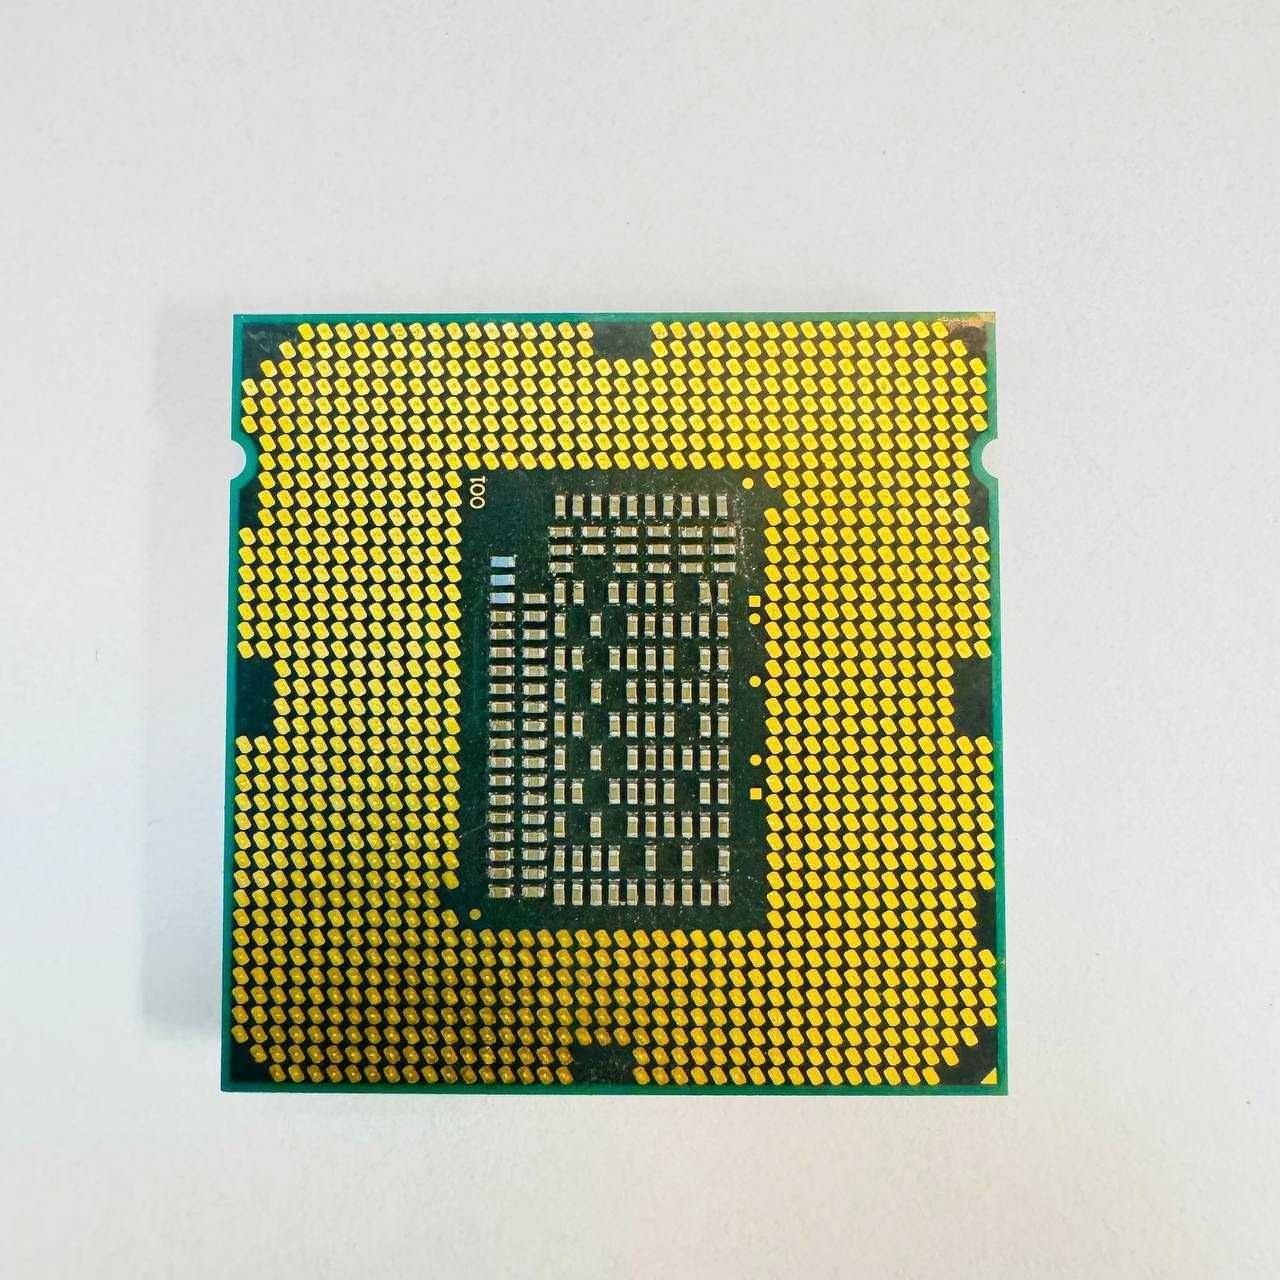 Процессор Intel Core i5 2320 4 ядра по 3.3GHz Intel HD Graphics s1155